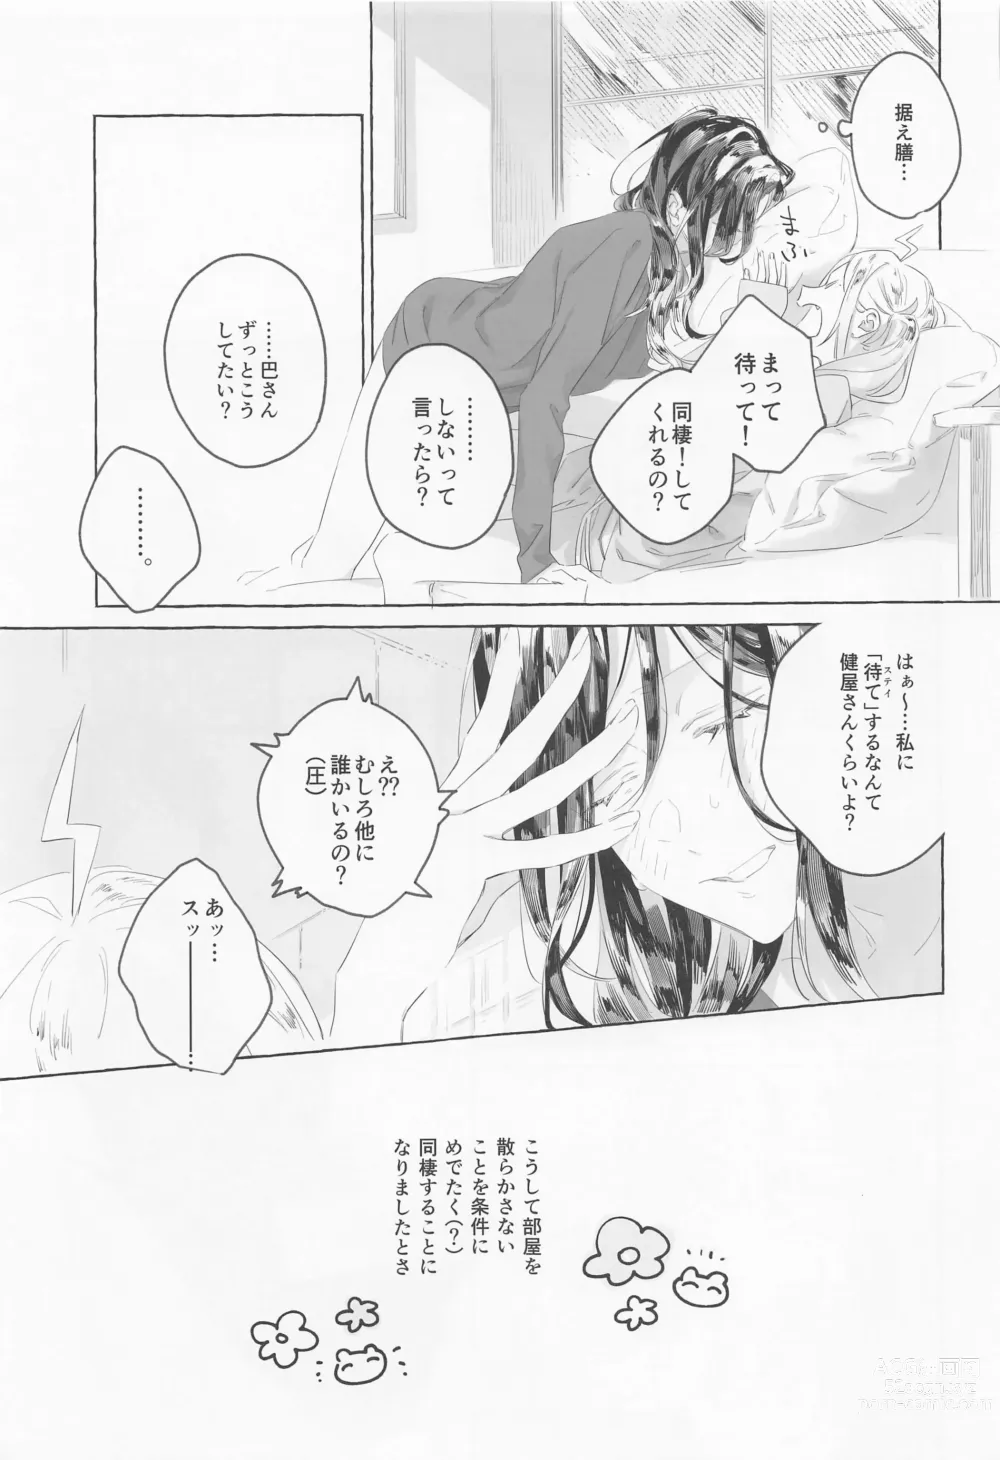 Page 6 of doujinshi Gomen ne, xxx Dekinakute - Im Sorry, I Can't xxx